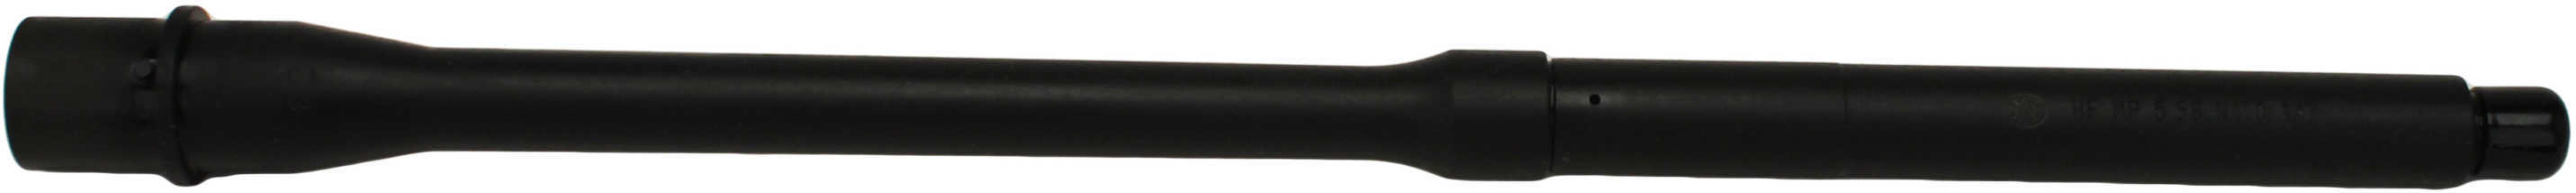 FN Bbl AR15 5.56X45 16 Mid Length Gas System